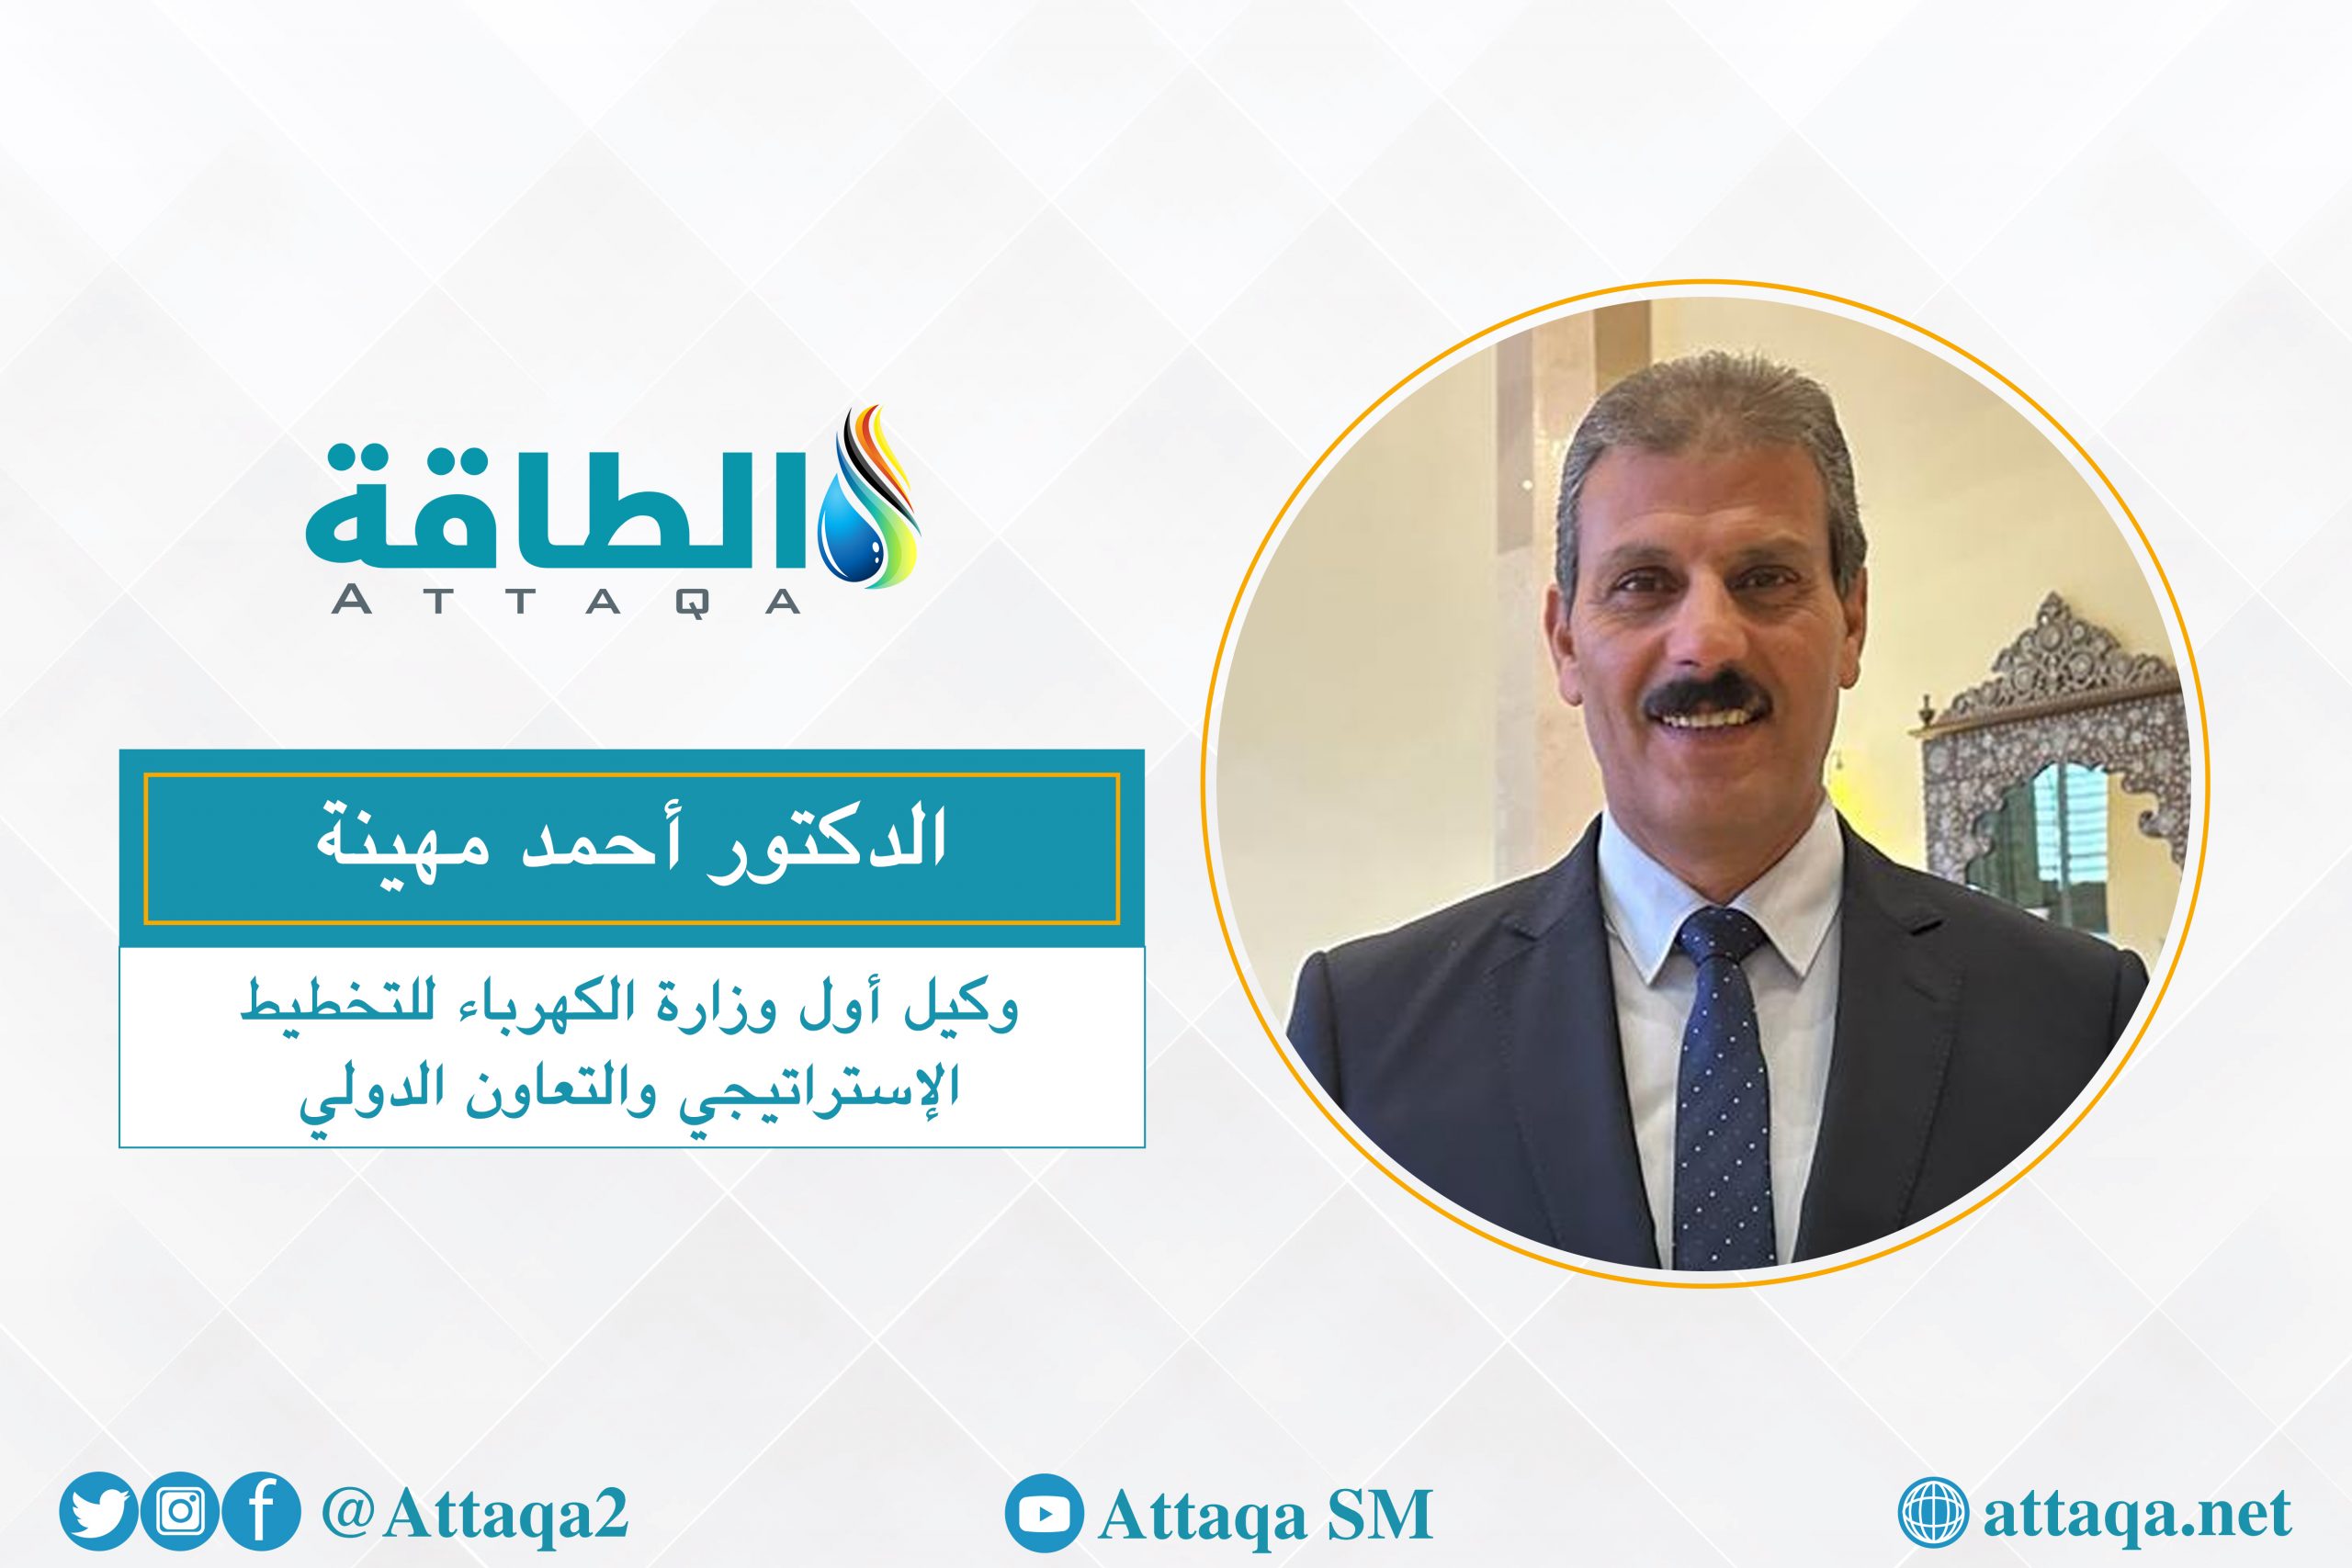 وكيل أول وزارة الكهرباء للتخطيط الإستراتيجي الدكتور أحمد مهينة يتحدث عن السوق العربية المشتركة للكهرباء